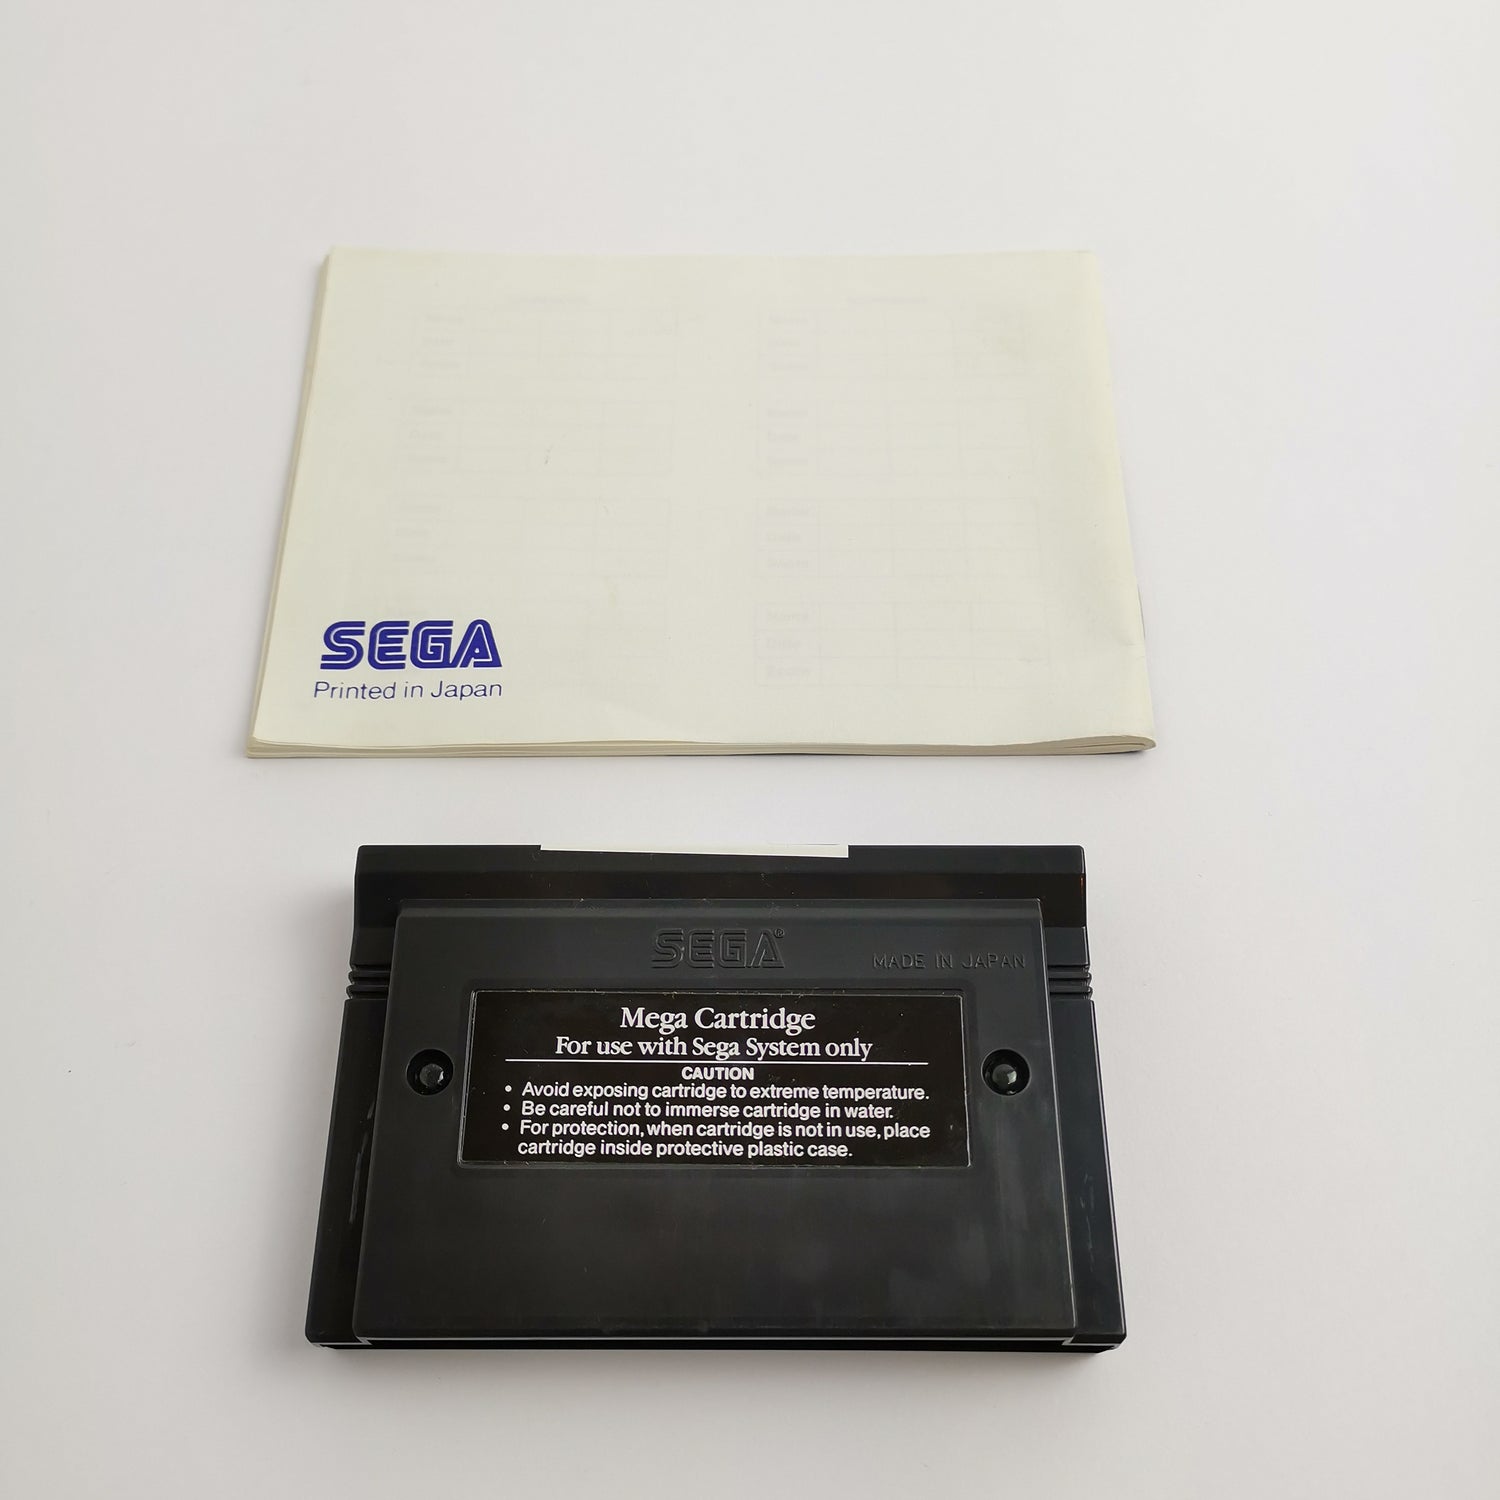 Sega Master System Spiel 